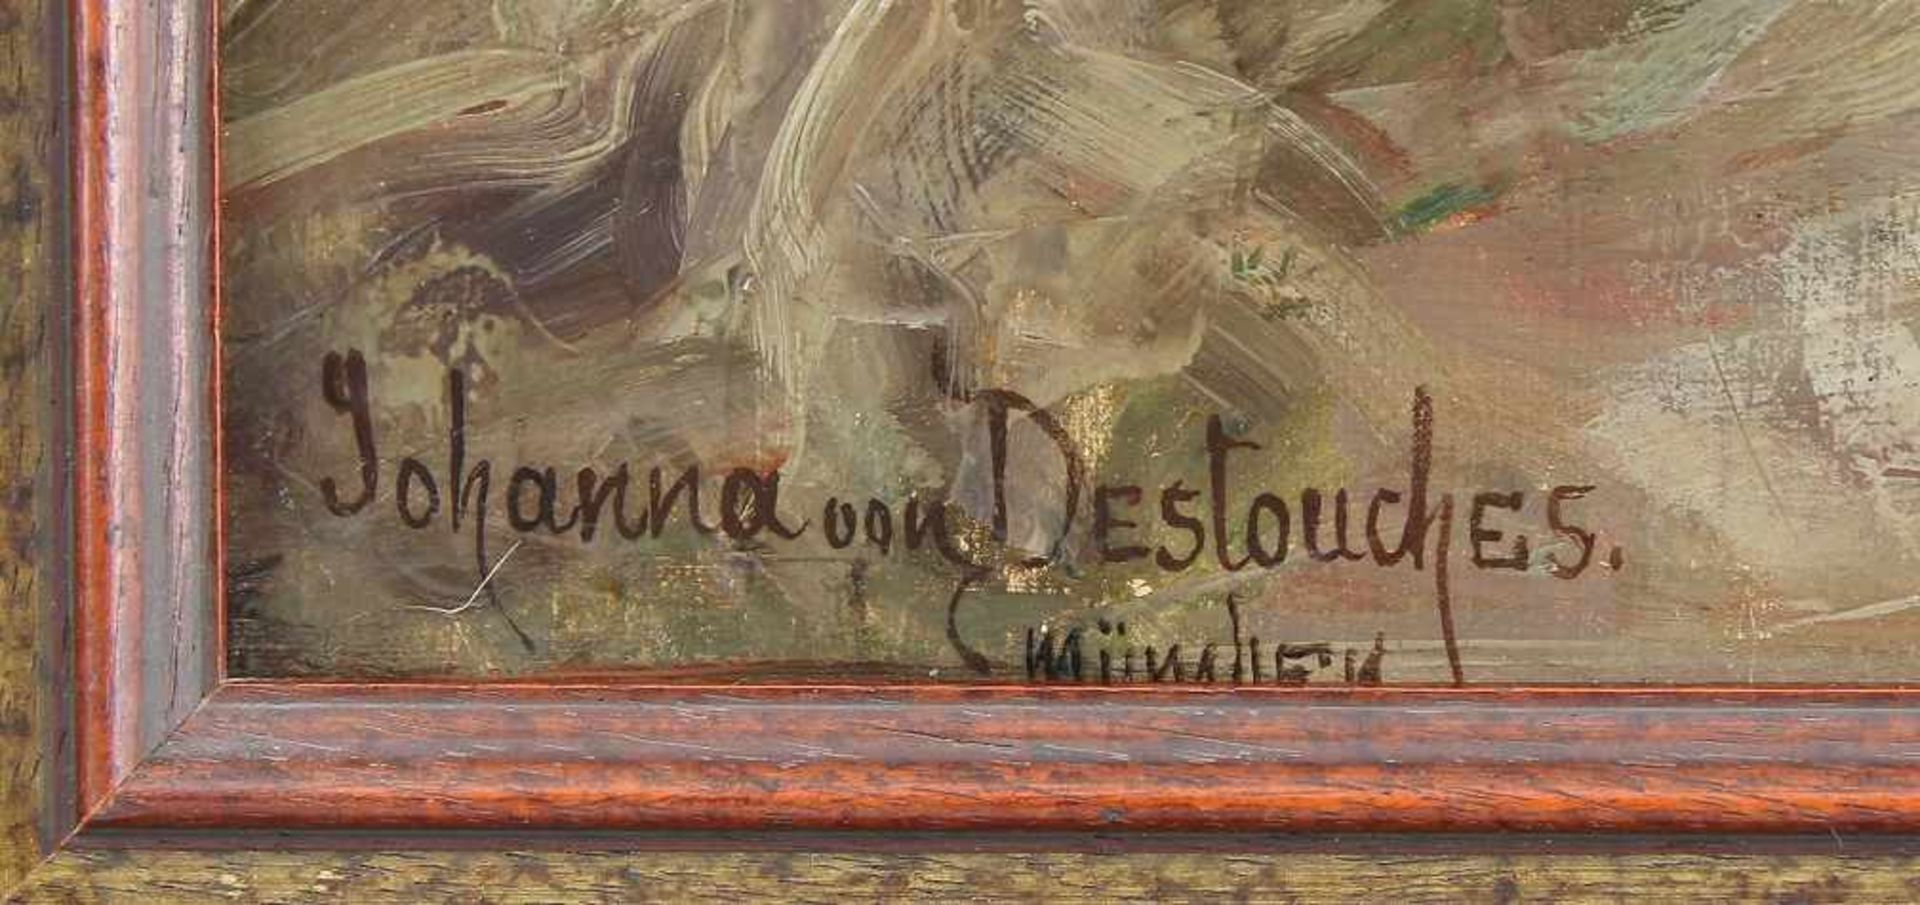 Destouches, Johanna von (Munich 1869 - 1956 Munich) - Image 2 of 2